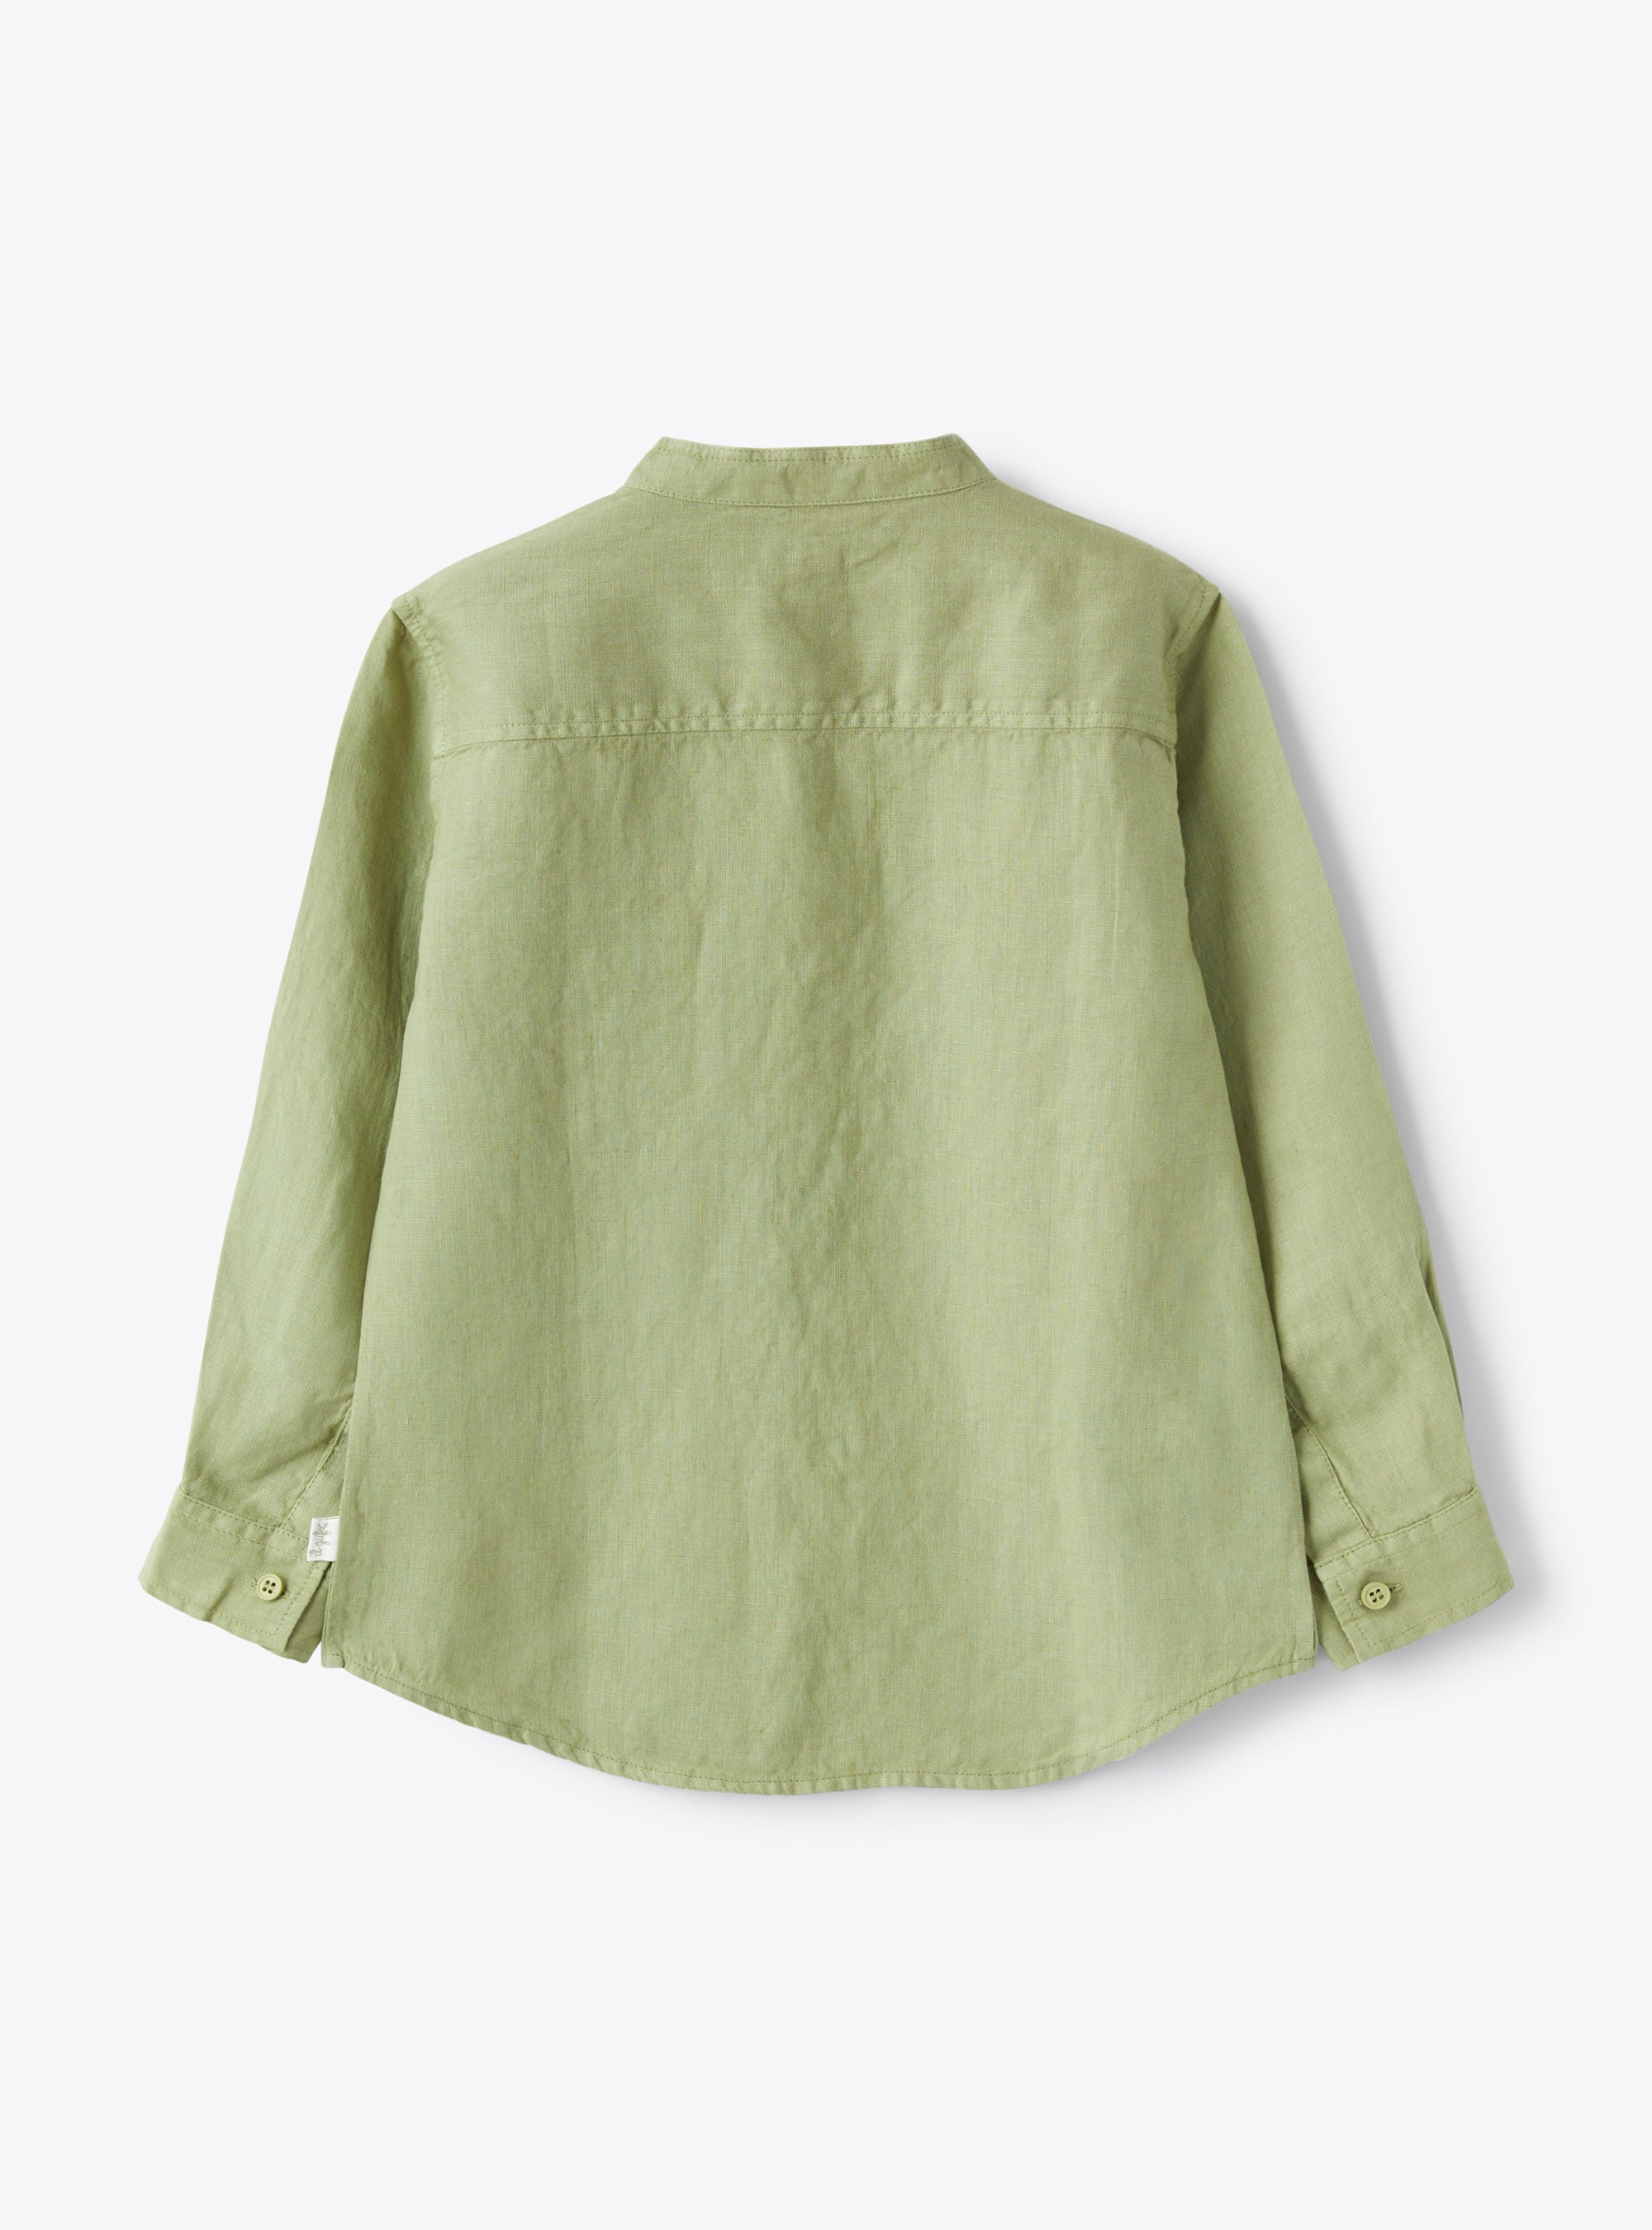 Mandarin-collar shirt in sage-green linen - Green | Il Gufo